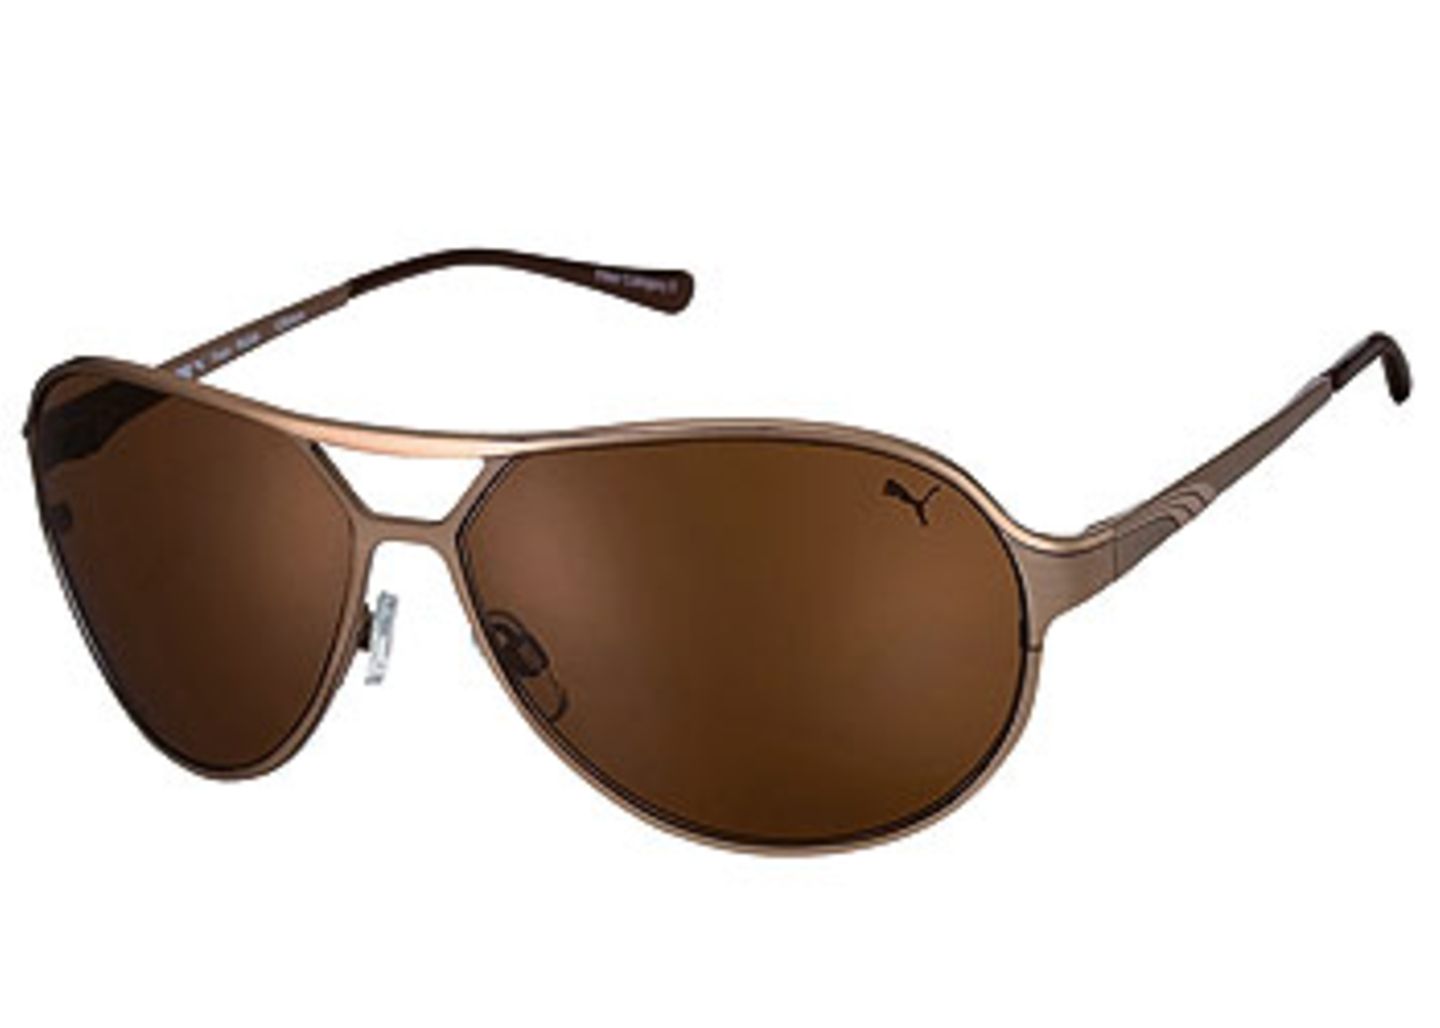 Pilotenbrille mit bronzefarbener Metallfassung und braunen Gläsern; 149,00 Euro; von Puma